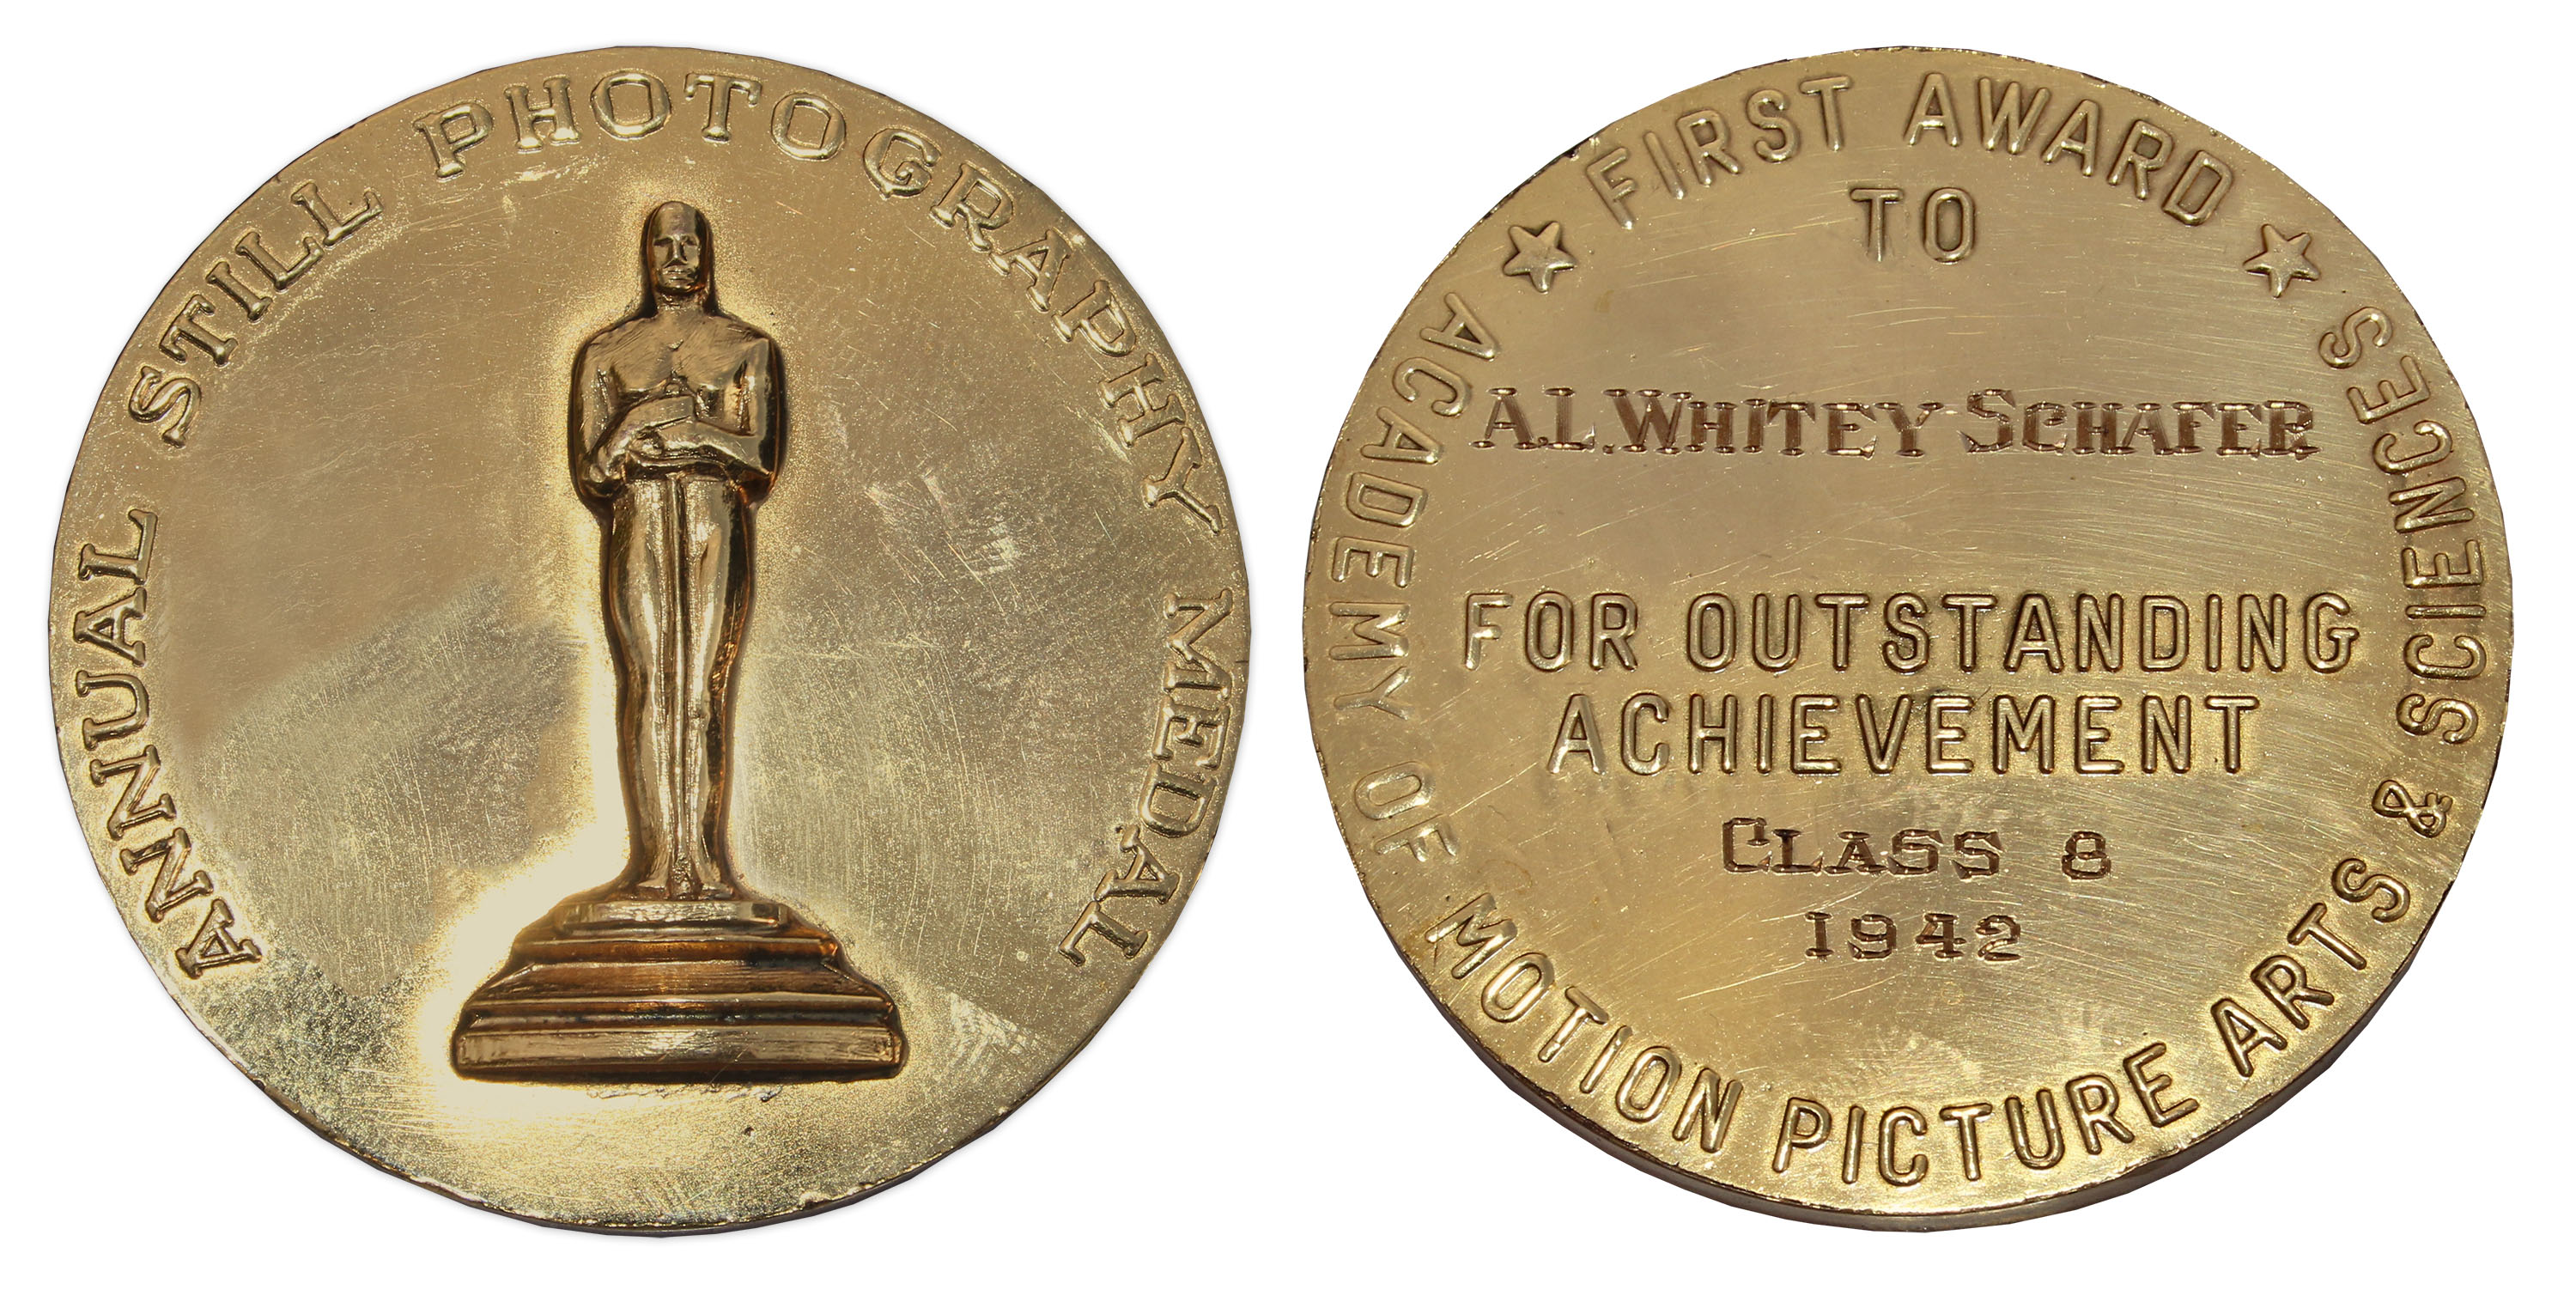 1942 Academy Award Medallion